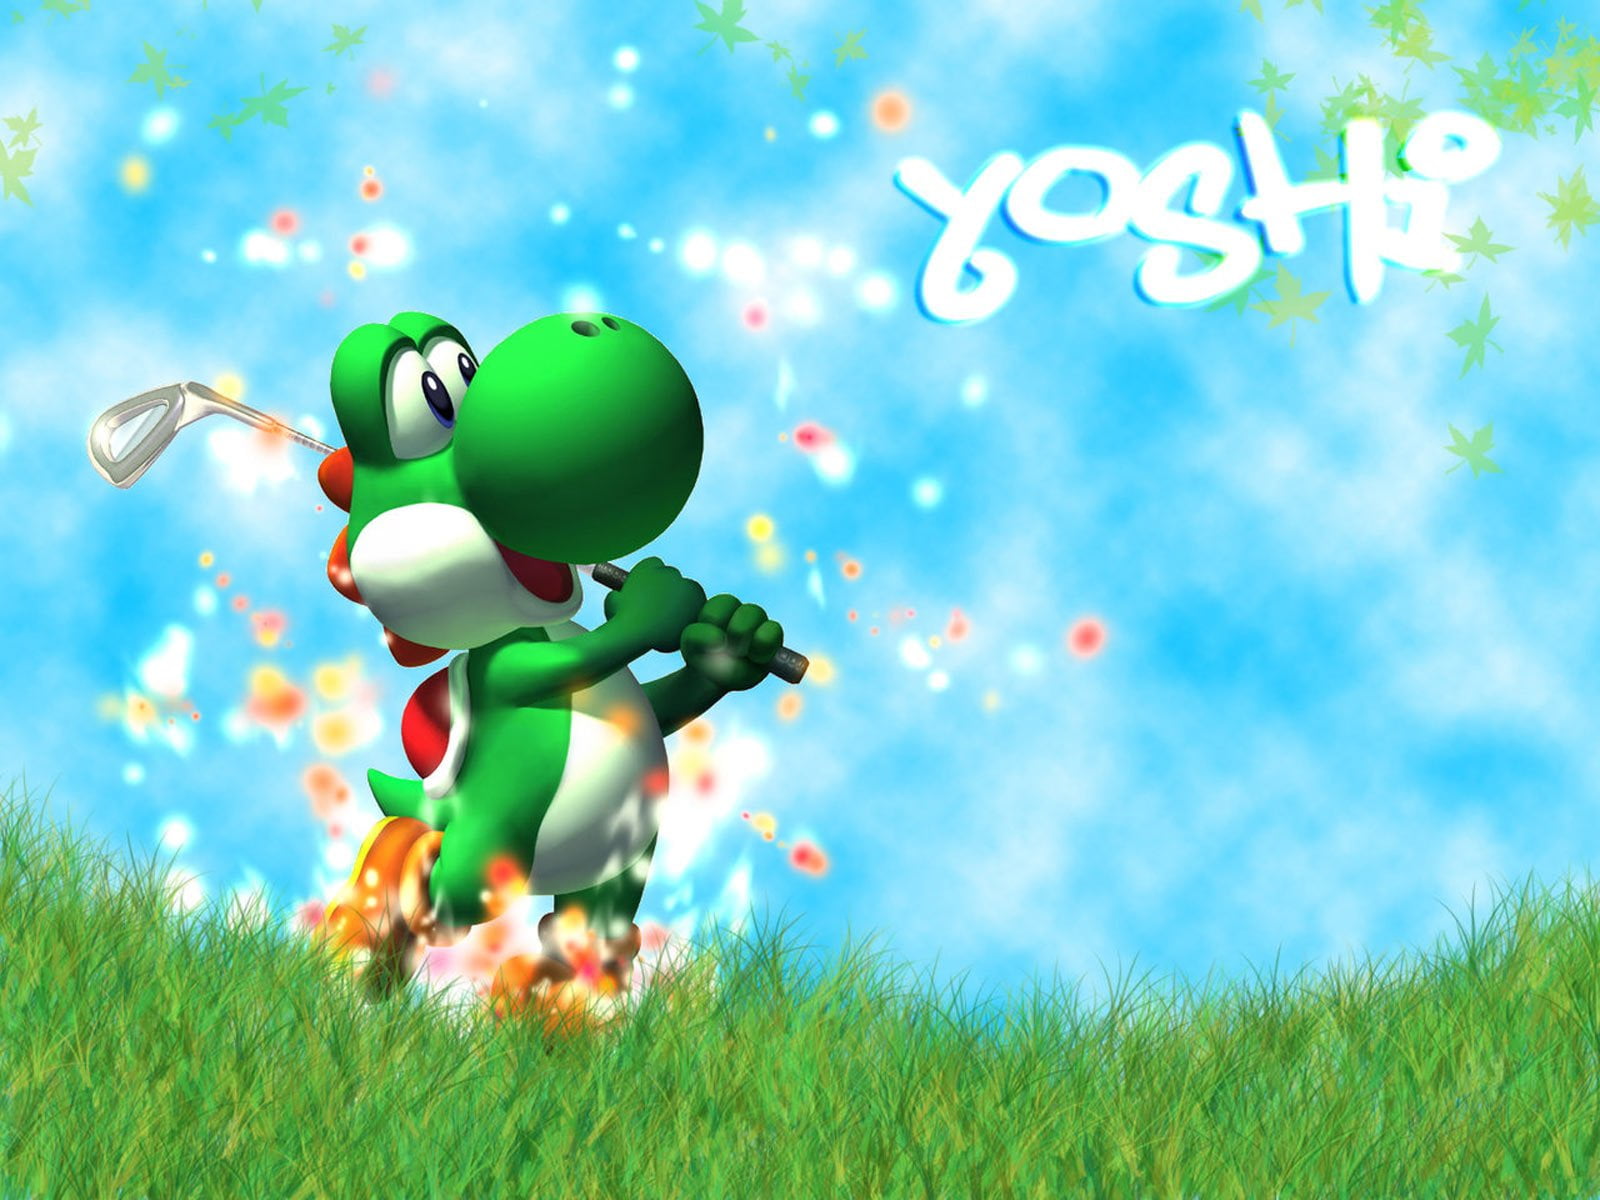 Video Game, Mario Golf: Toadstool Tour, Yoshi, grass, green color